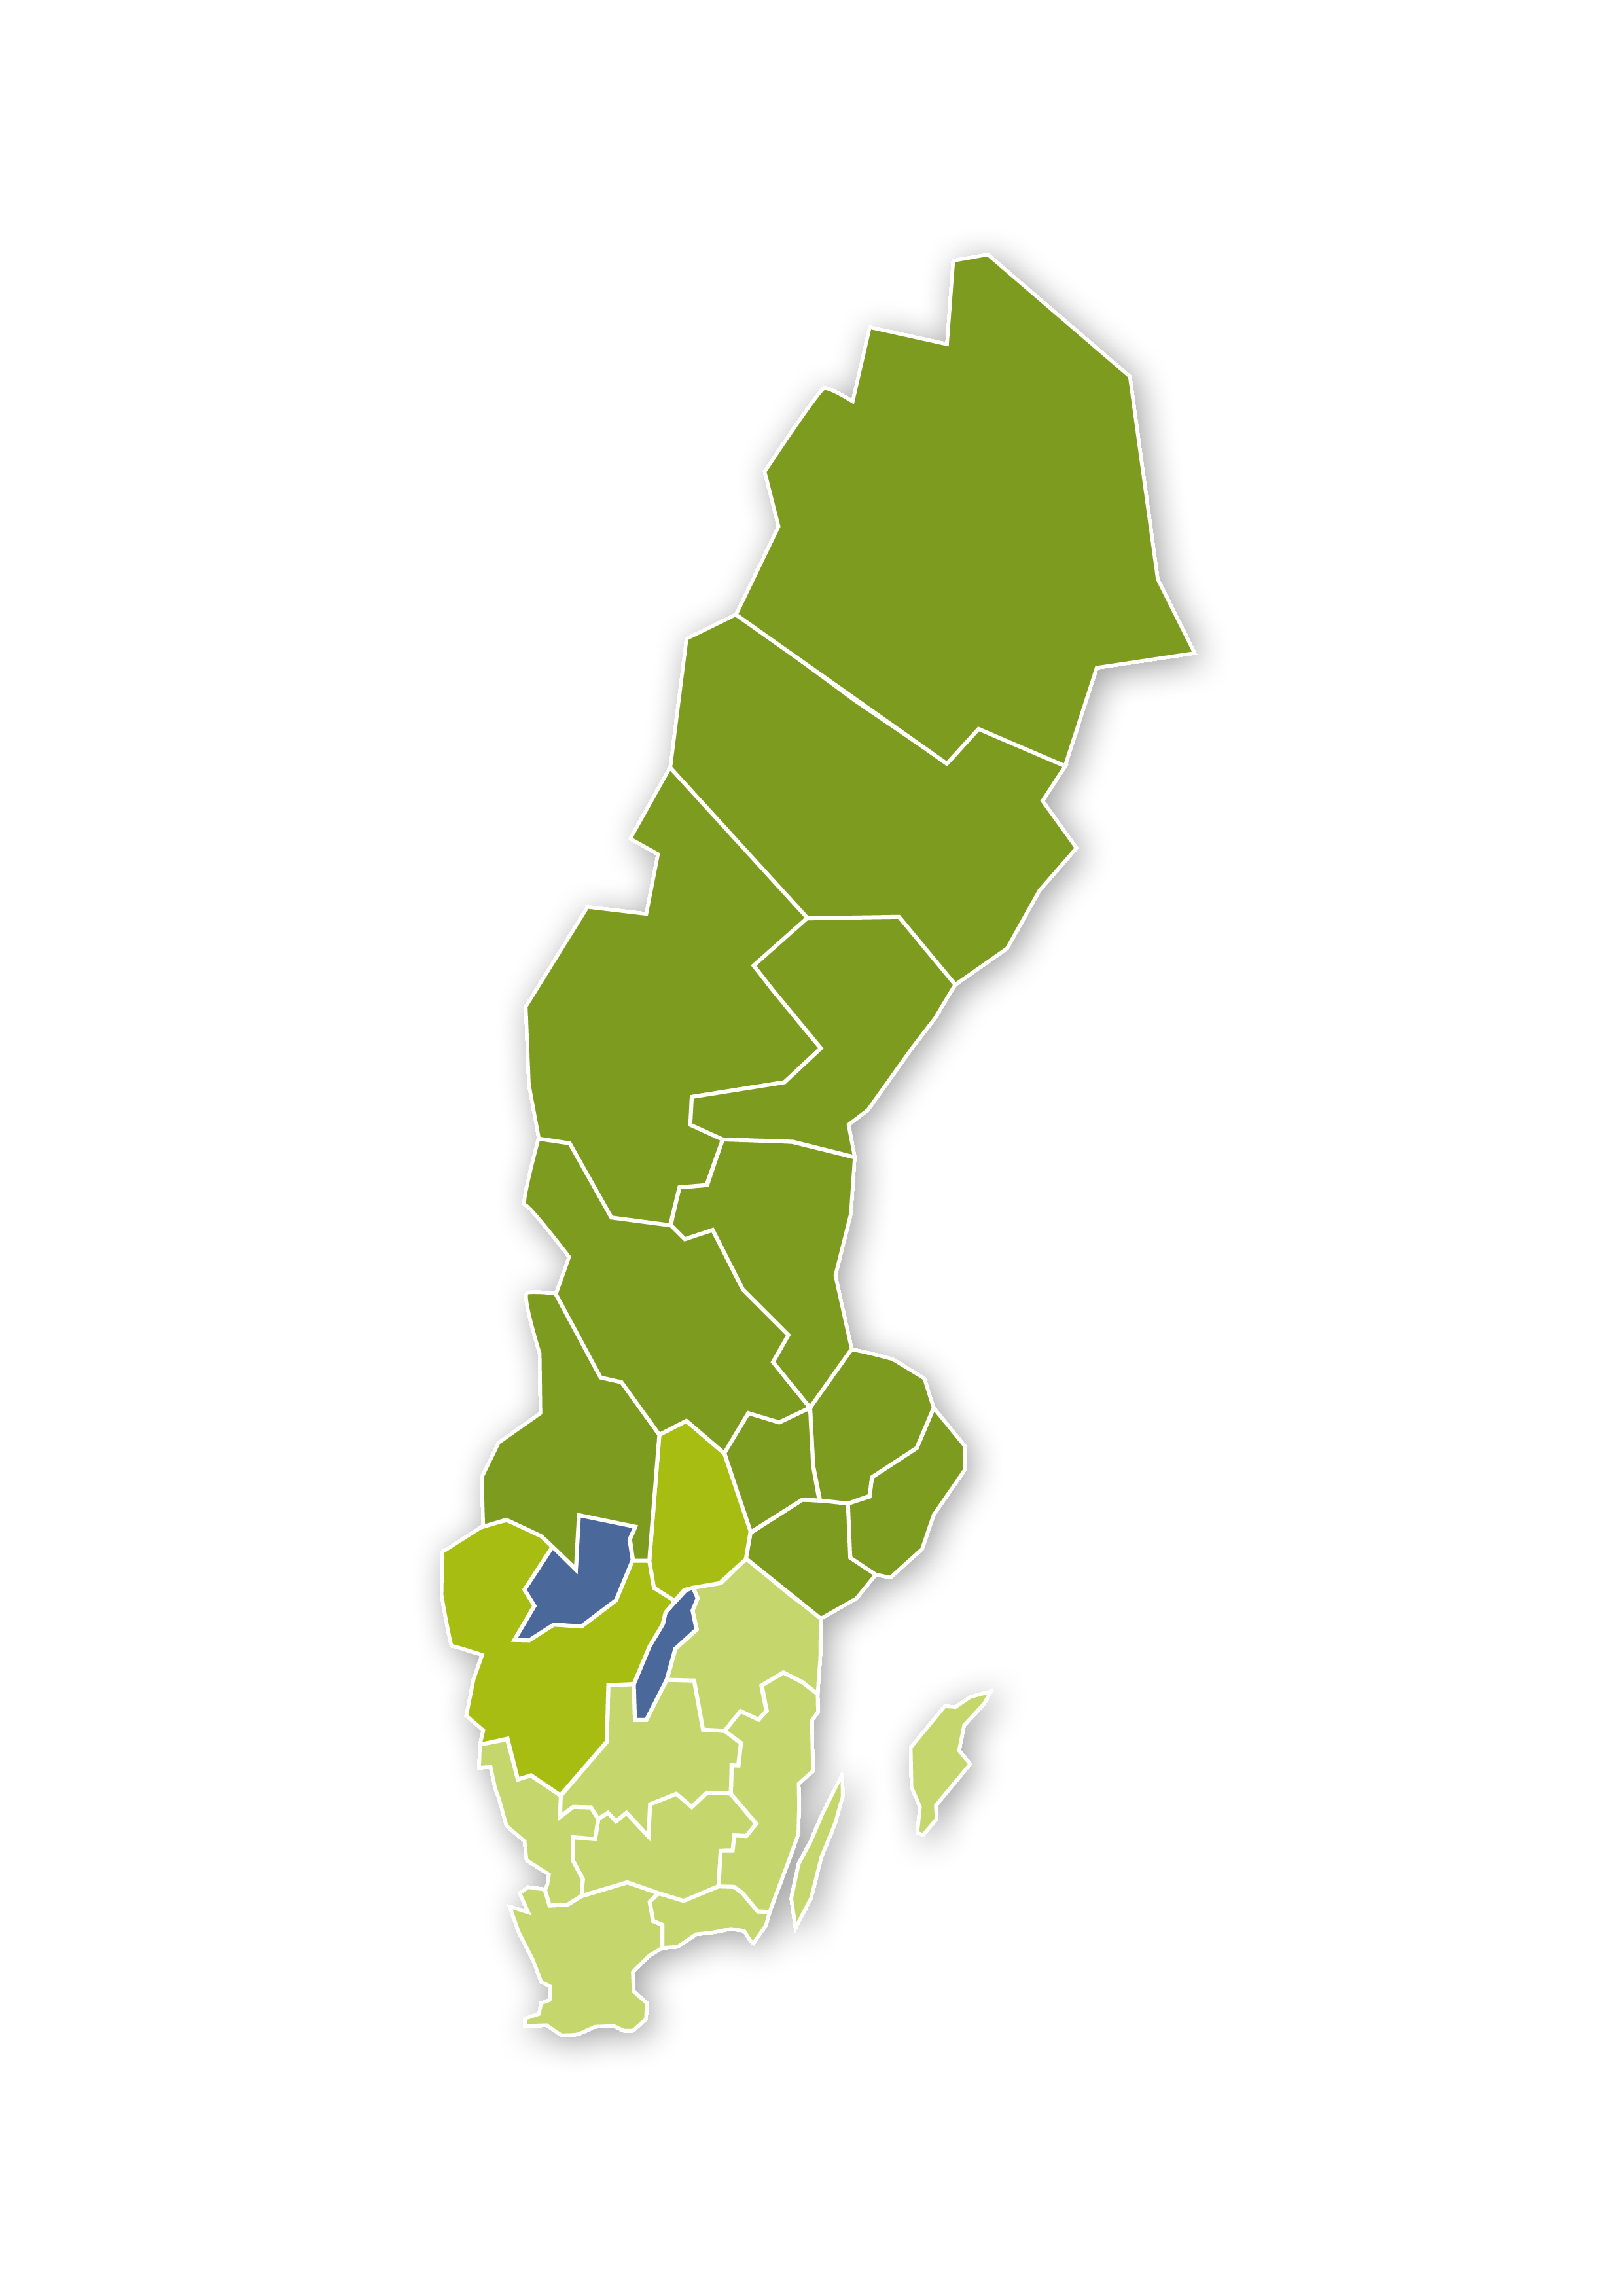 Sverigekarta nodindelning - Nationella självskadeprojektet